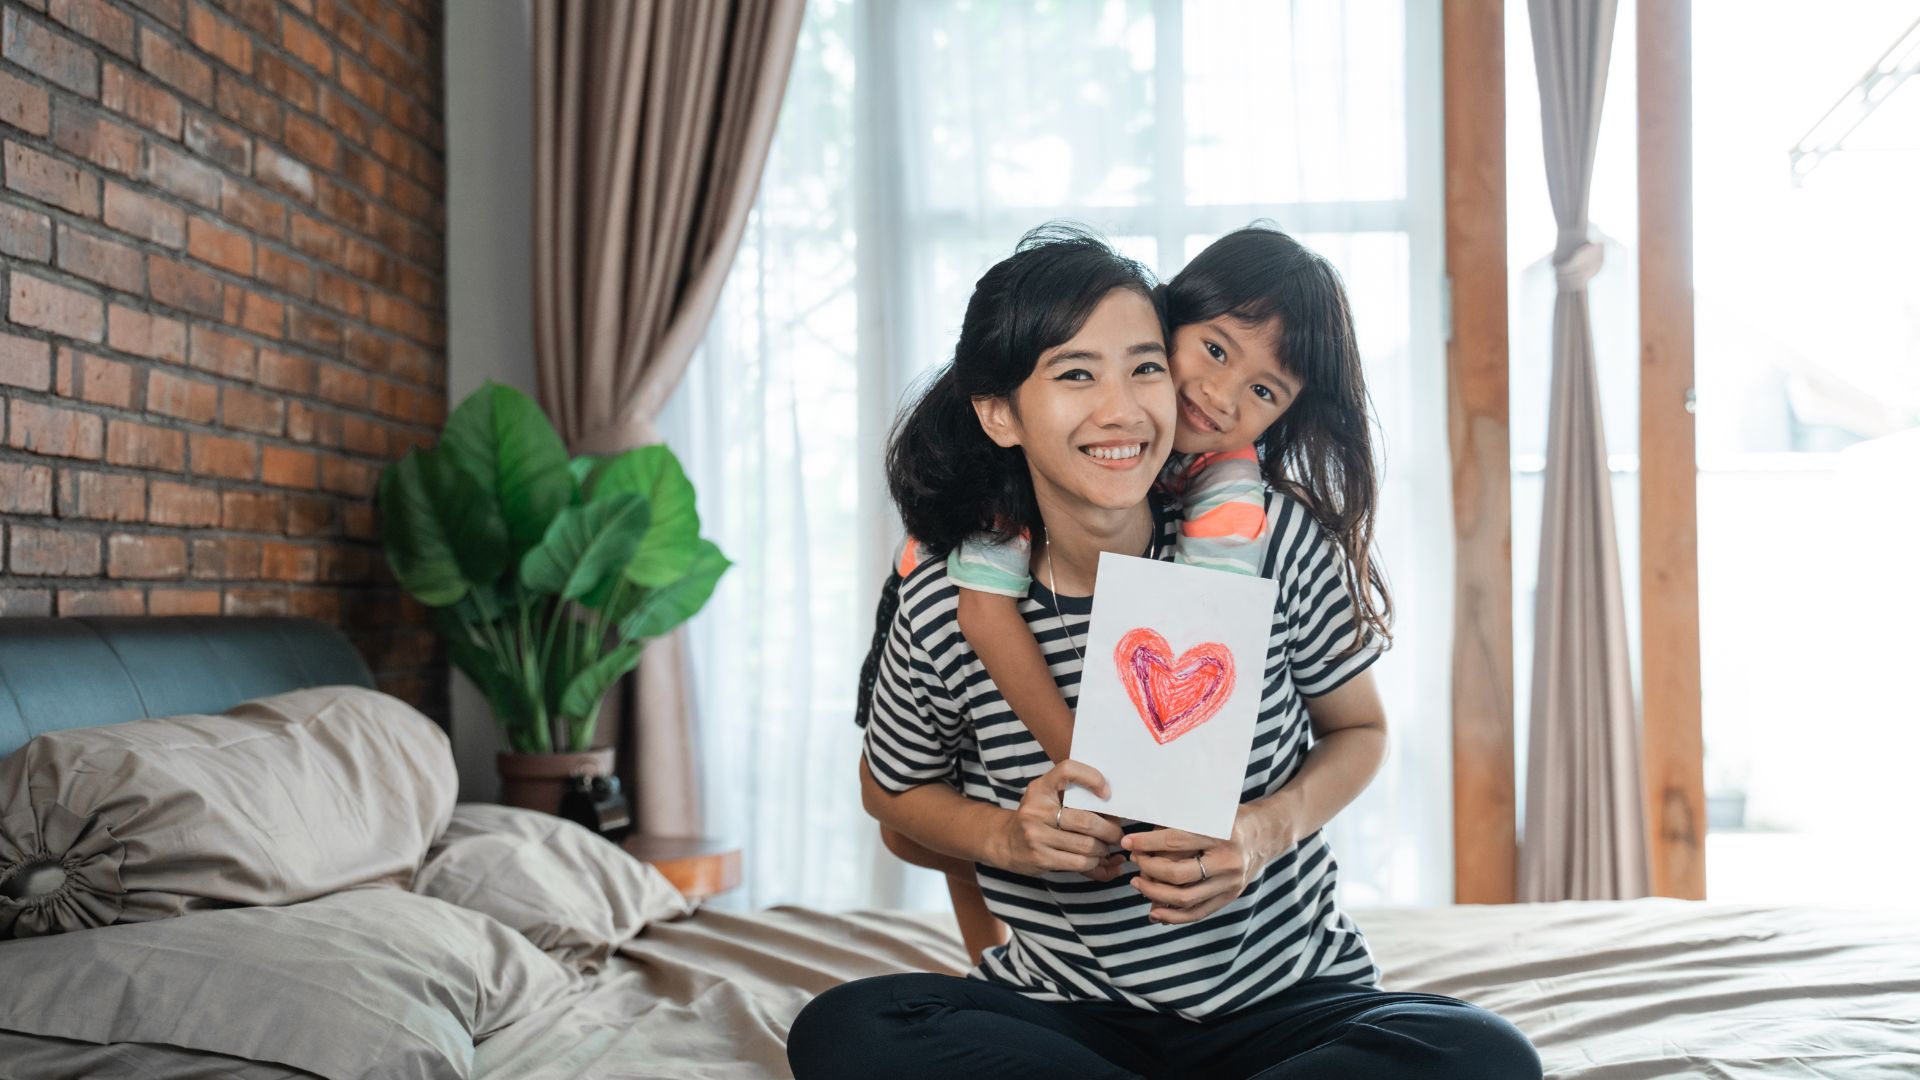 Imagem de uma mãe sentada em uma cama, segurando uma carta com desenho de coração. Ela usa camiseta listrada nas cores branco e preto e está sendo abraçada por sua filha.